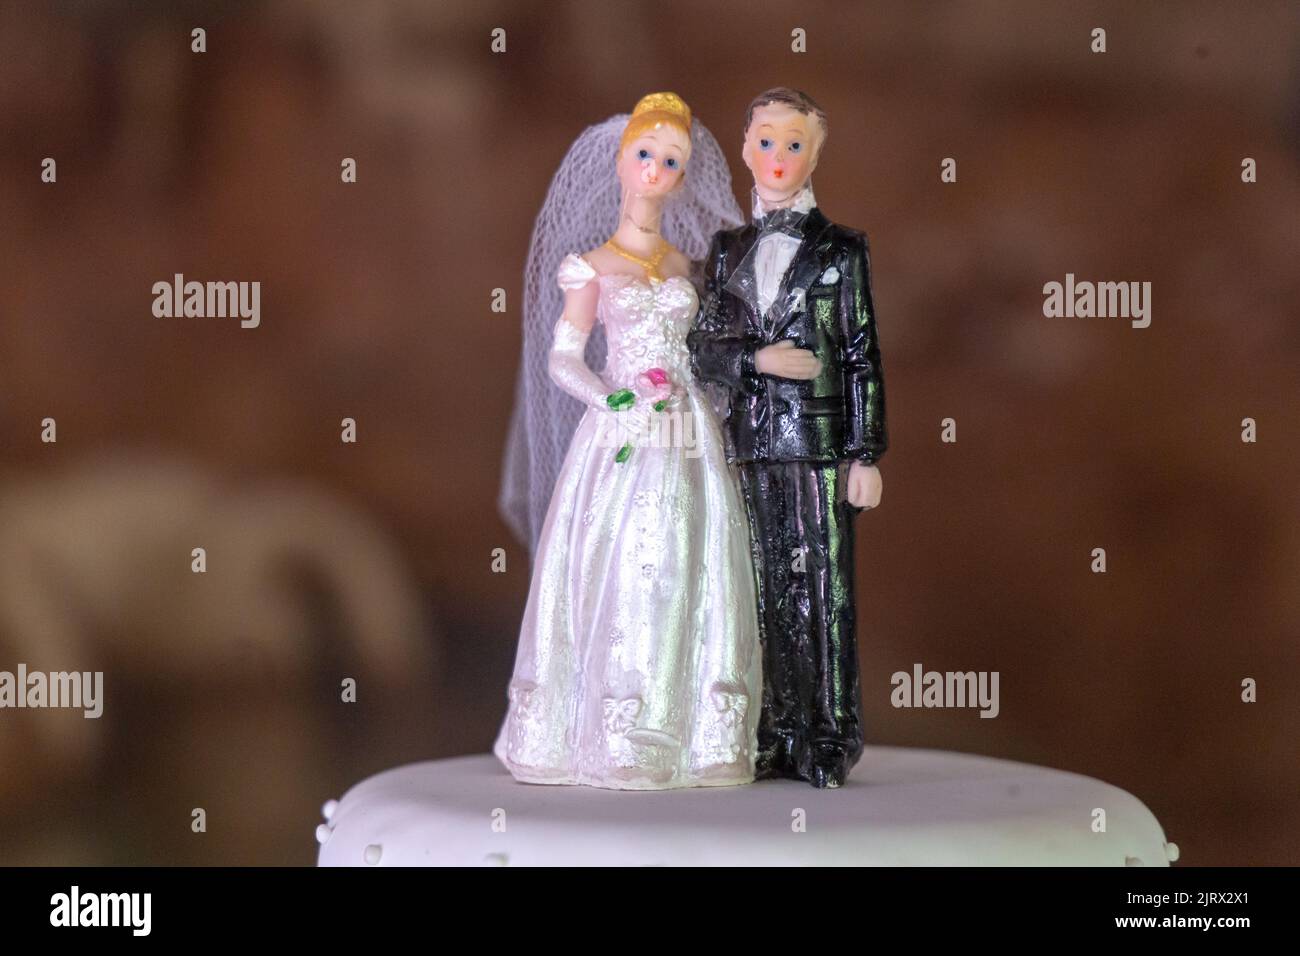 Deko Puppen für Hochzeitstorte mit Braut und Bräutigam in rio de janeiro. Stockfoto